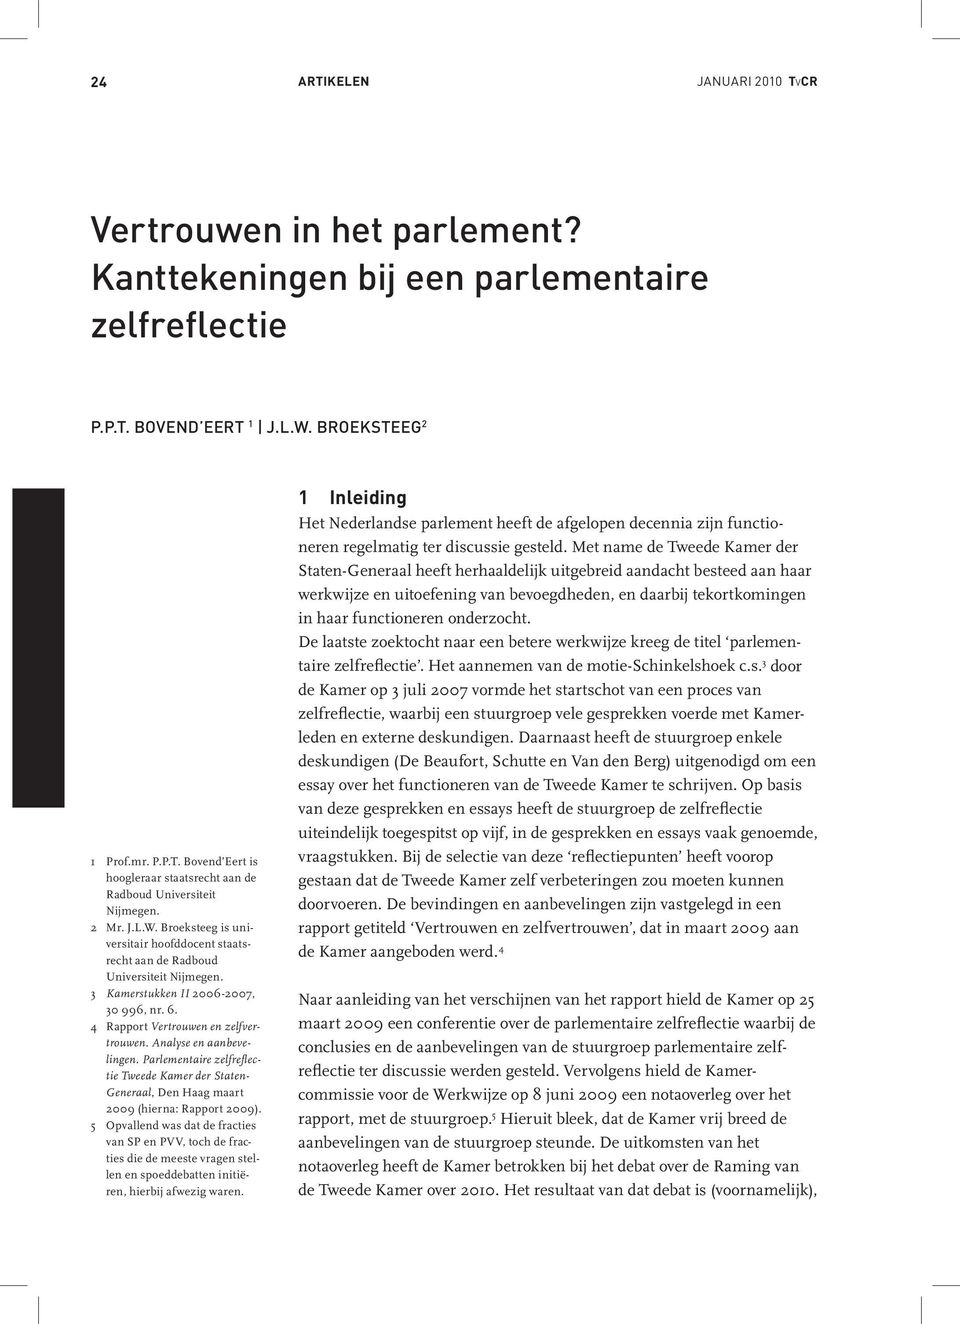 Analyse en aanbevelingen. Parlementaire zelfreflectie Tweede Kamer der Staten- Generaal, Den Haag maart 2009 (hierna: Rapport 2009).